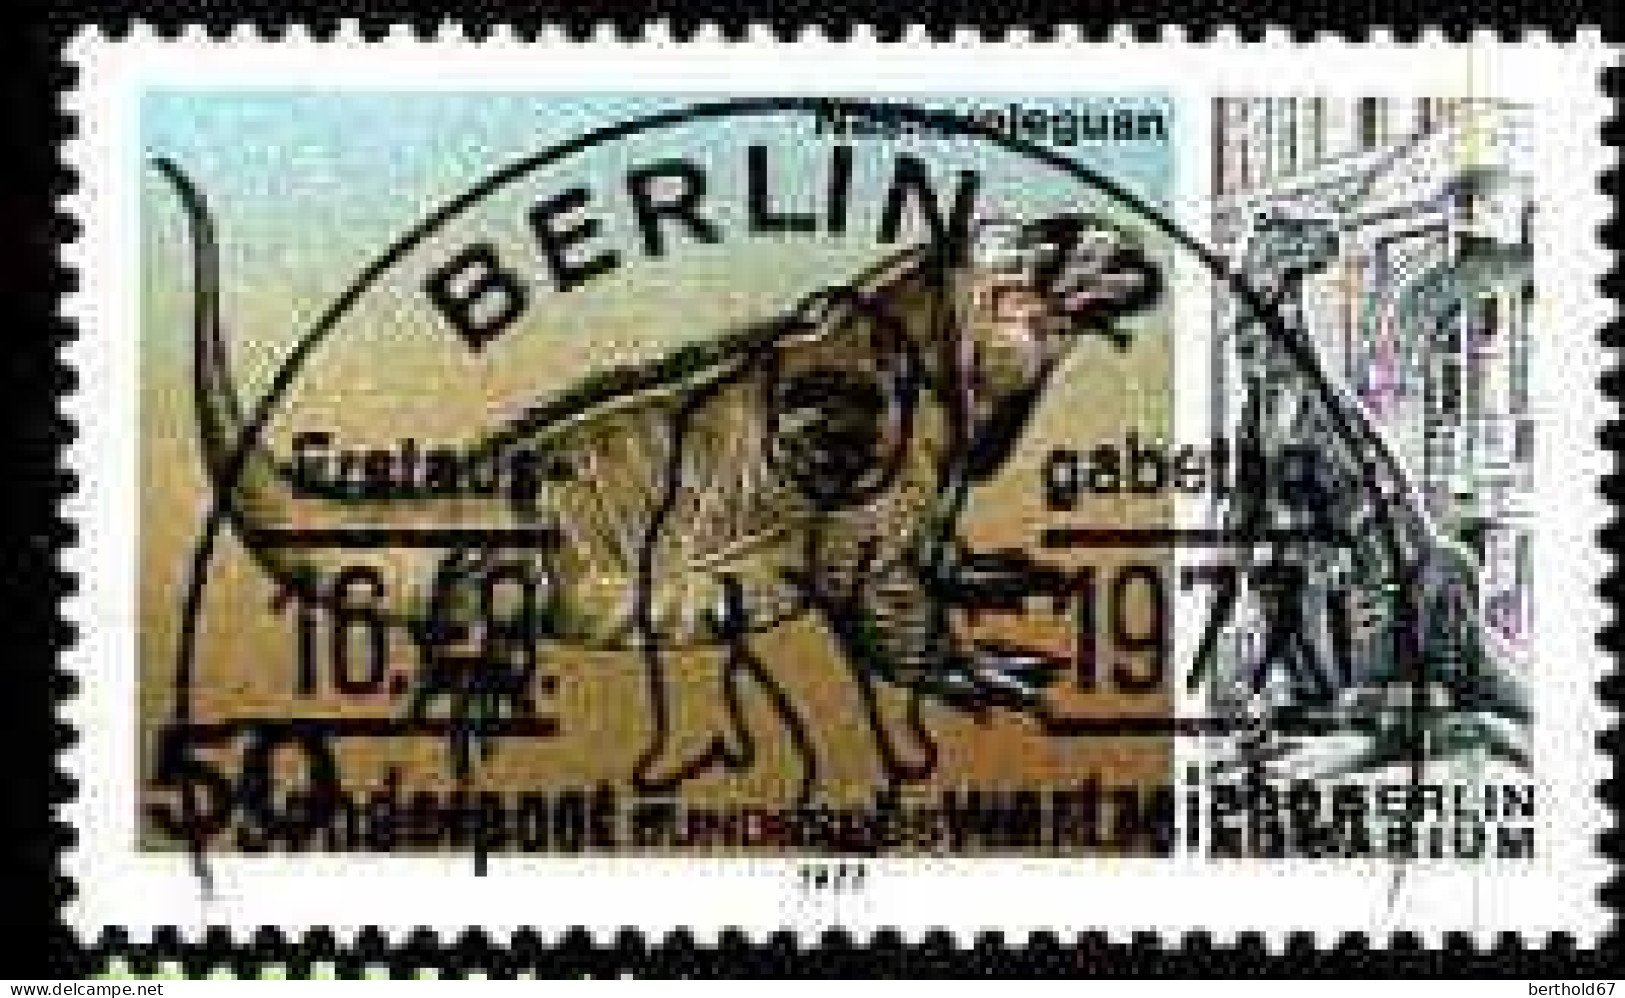 Berlin Poste Obl Yv:517 Mi:555 Cyclura Cornuta (TB Cachet à Date) - Used Stamps